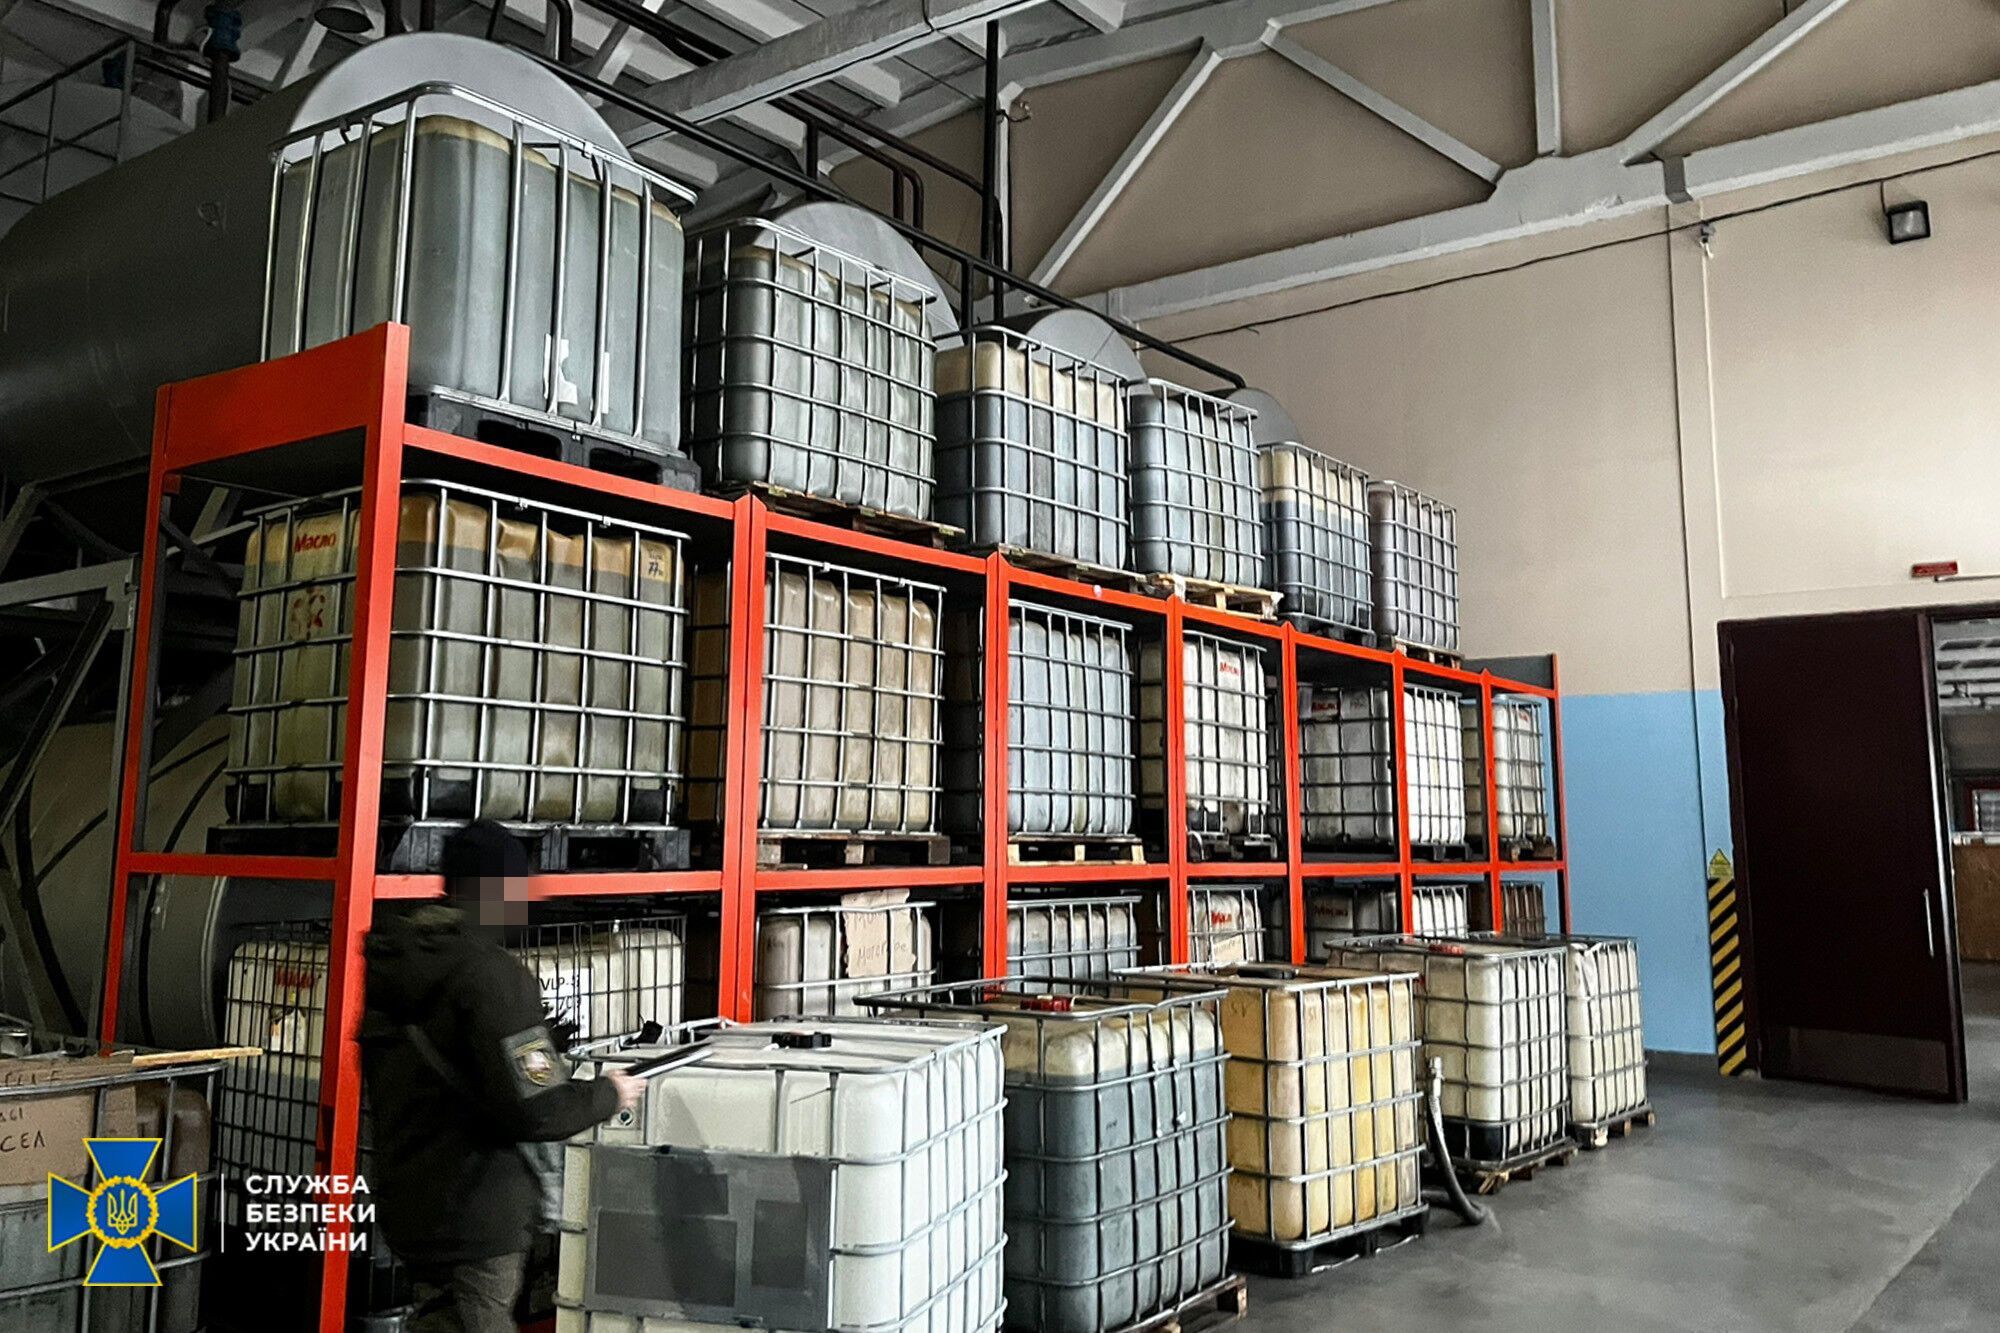 Незаконно завозили свои товары в Украину из россии: СБУ заблокировала активы российской энергетической компании